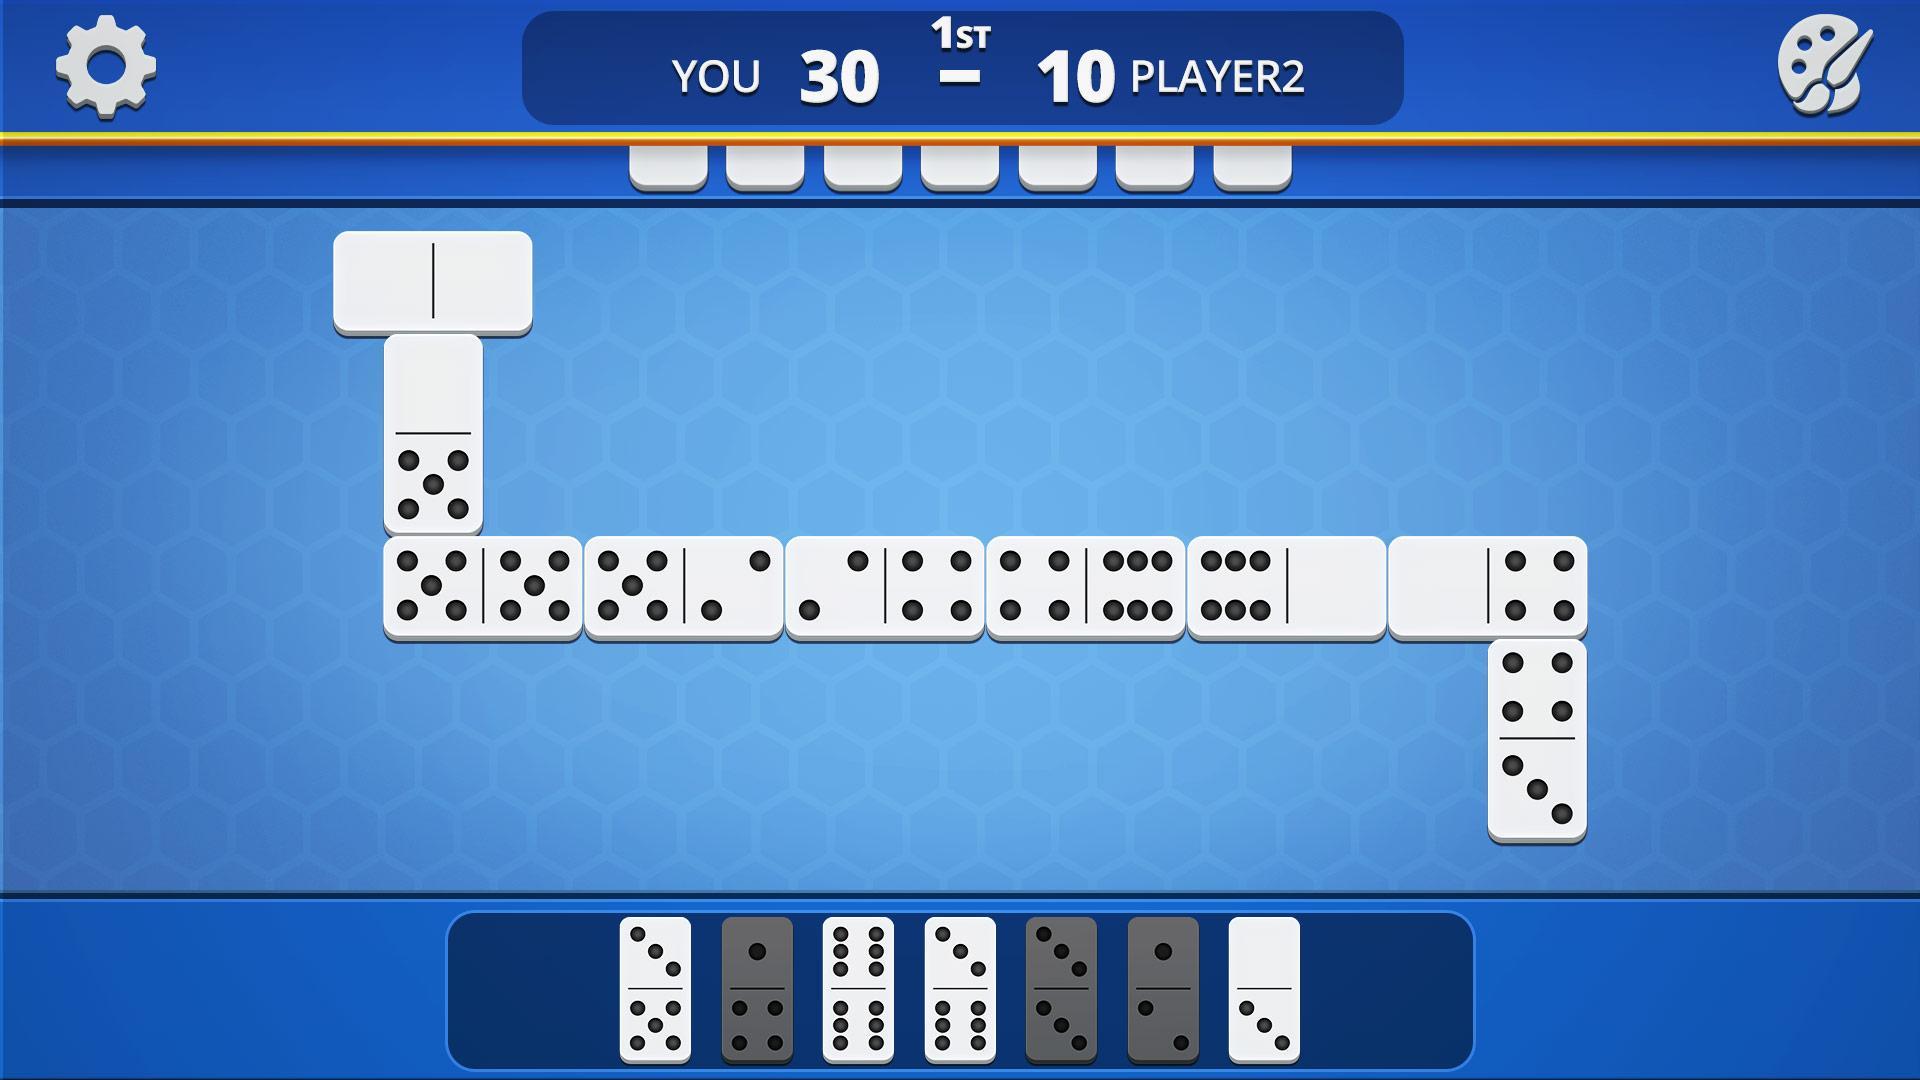 Dominoes Classic Domino Tile Based Game 1.2.5 Screenshot 22